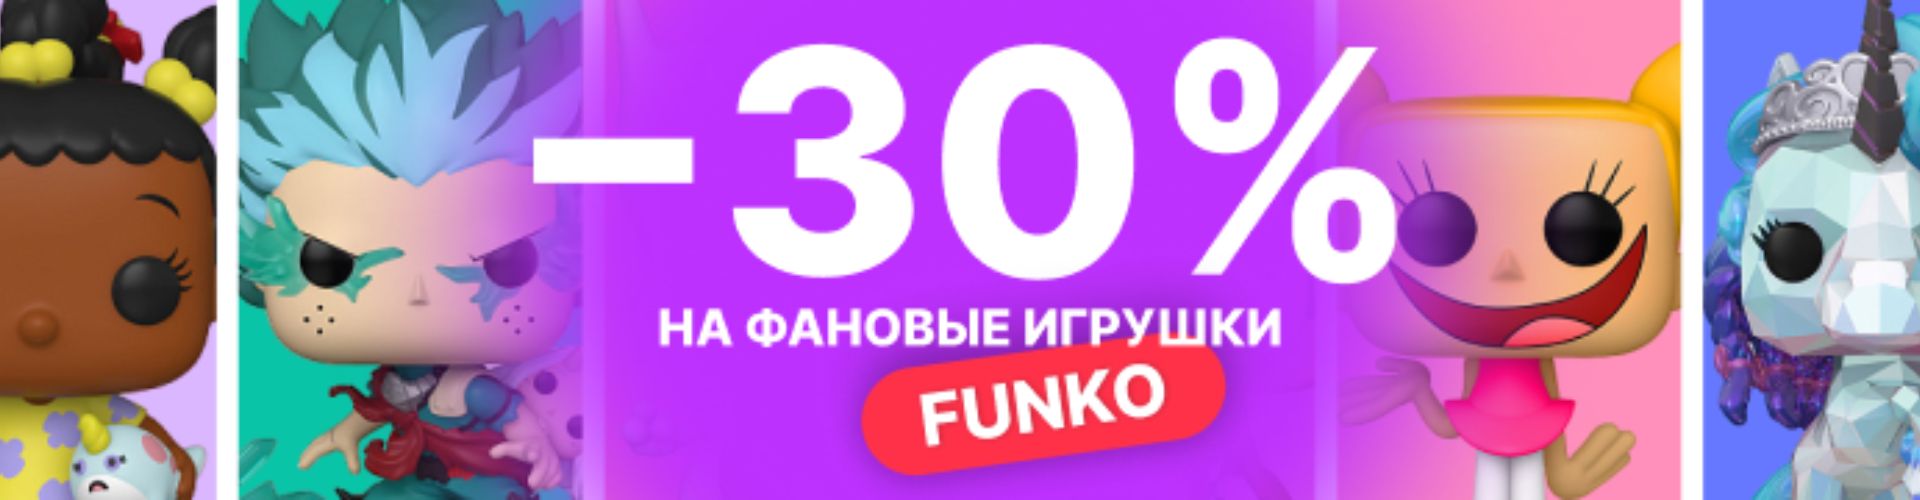 -30% на игрушки Funko в Буслике